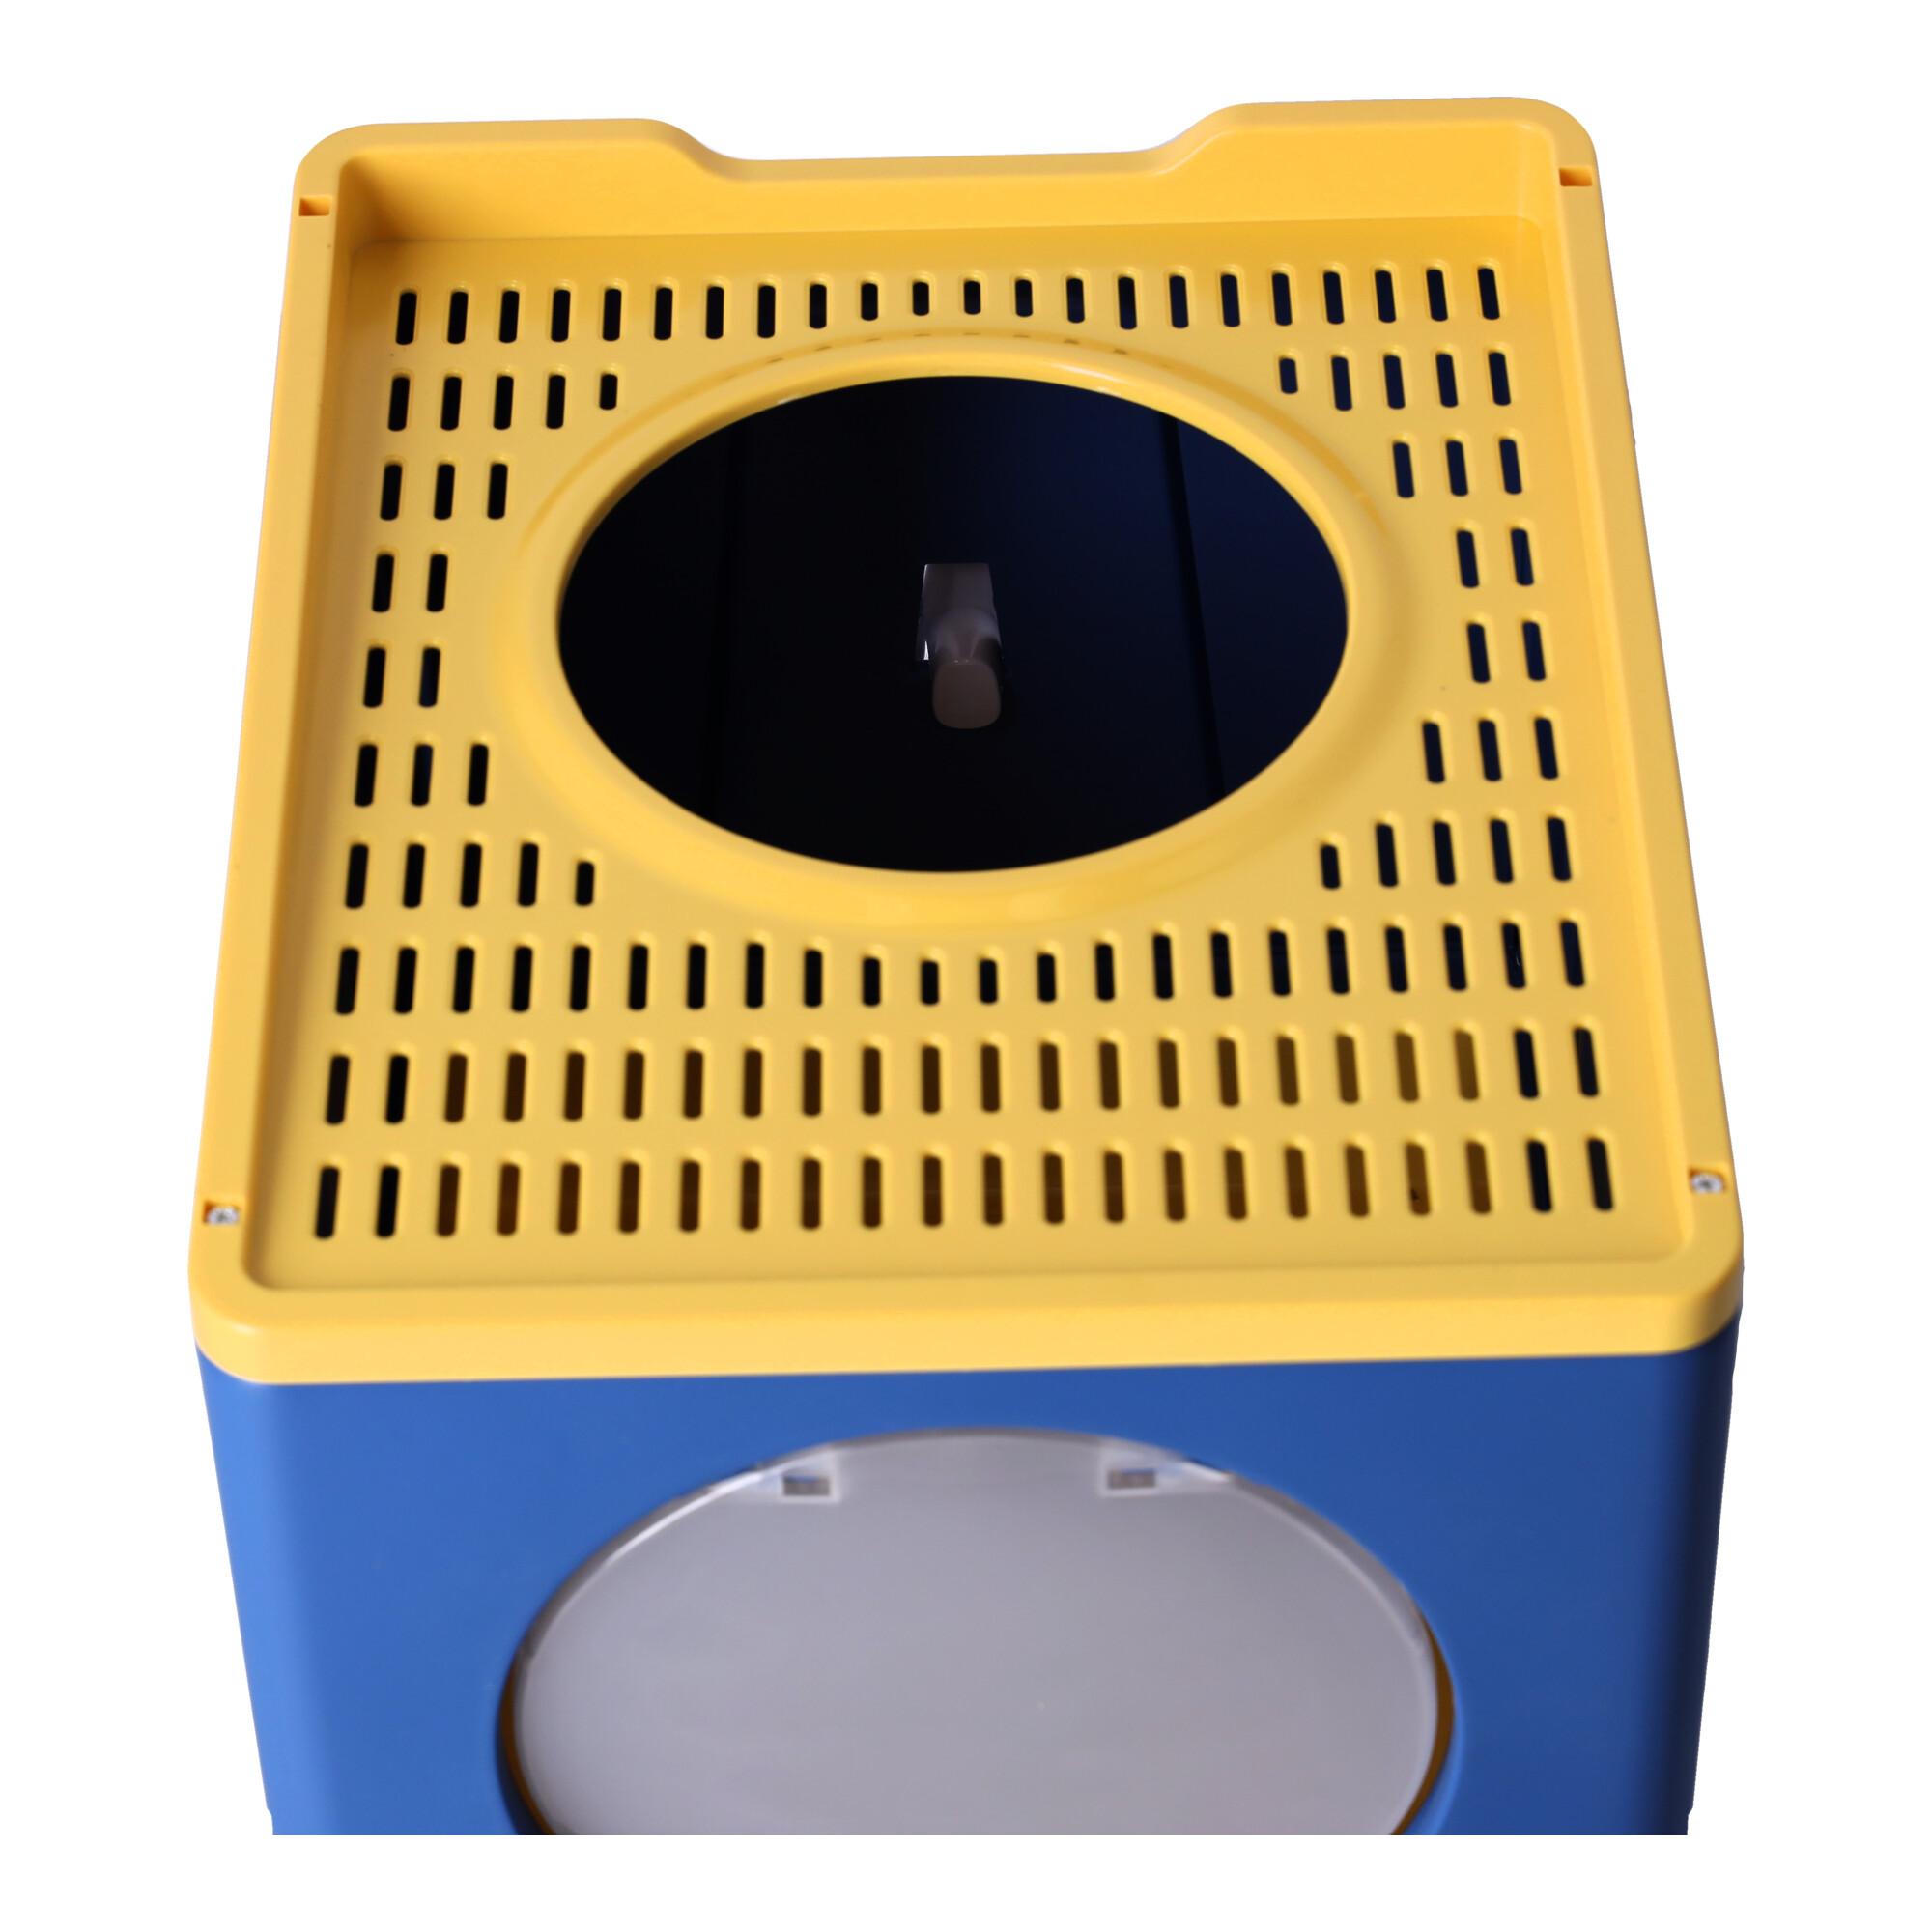 Cat litter box - dark blue and yellow